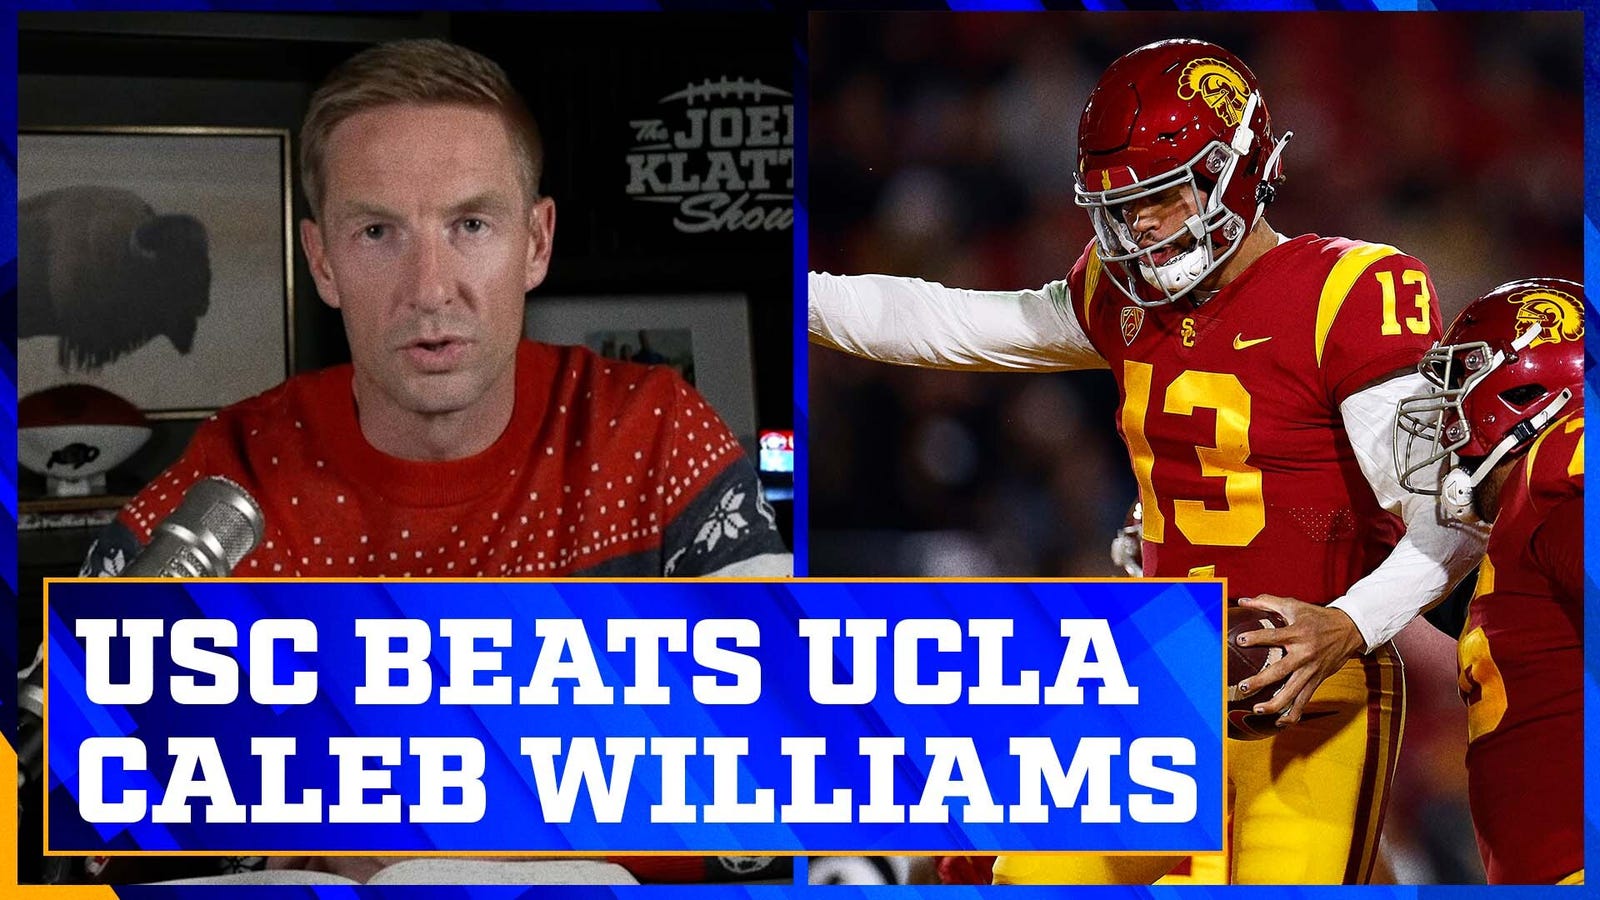 USC beats UCLA to keep CFP hopes alive